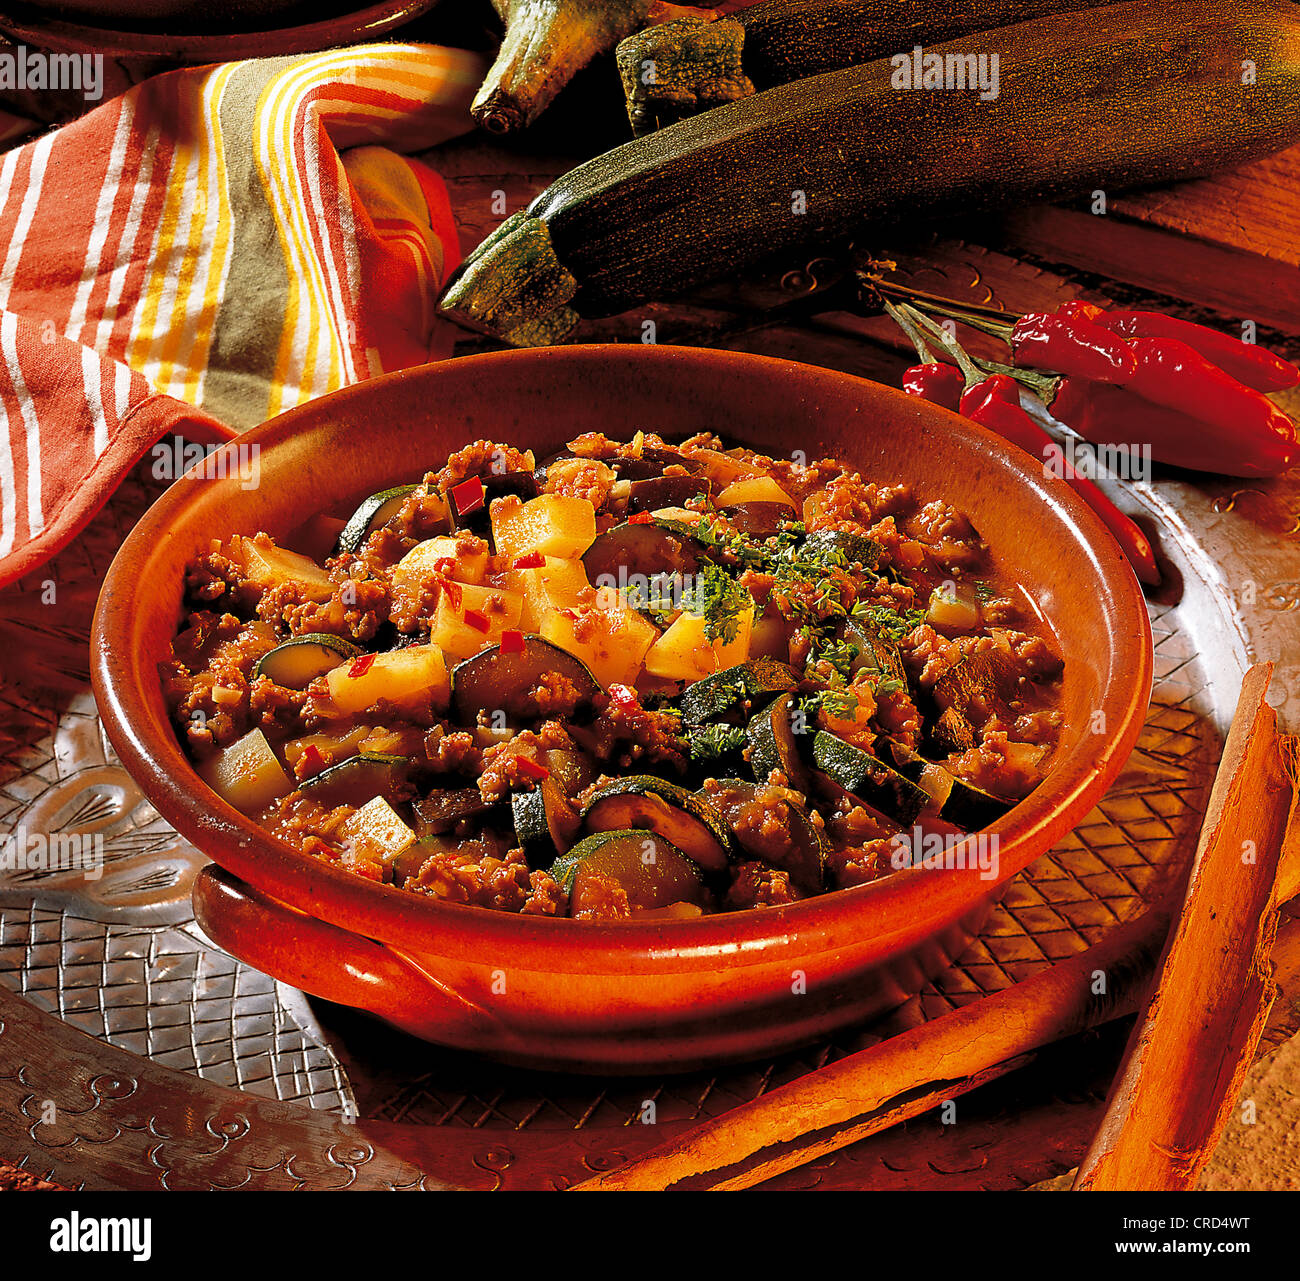 Marokkanische Gemüse-Tajine, Aubergine, Zucchini, Zwiebeln, Kartoffeln,  Hackfleisch, gewürzt mit Zimt, Koriander und Kreuzkümmel Stockfotografie -  Alamy